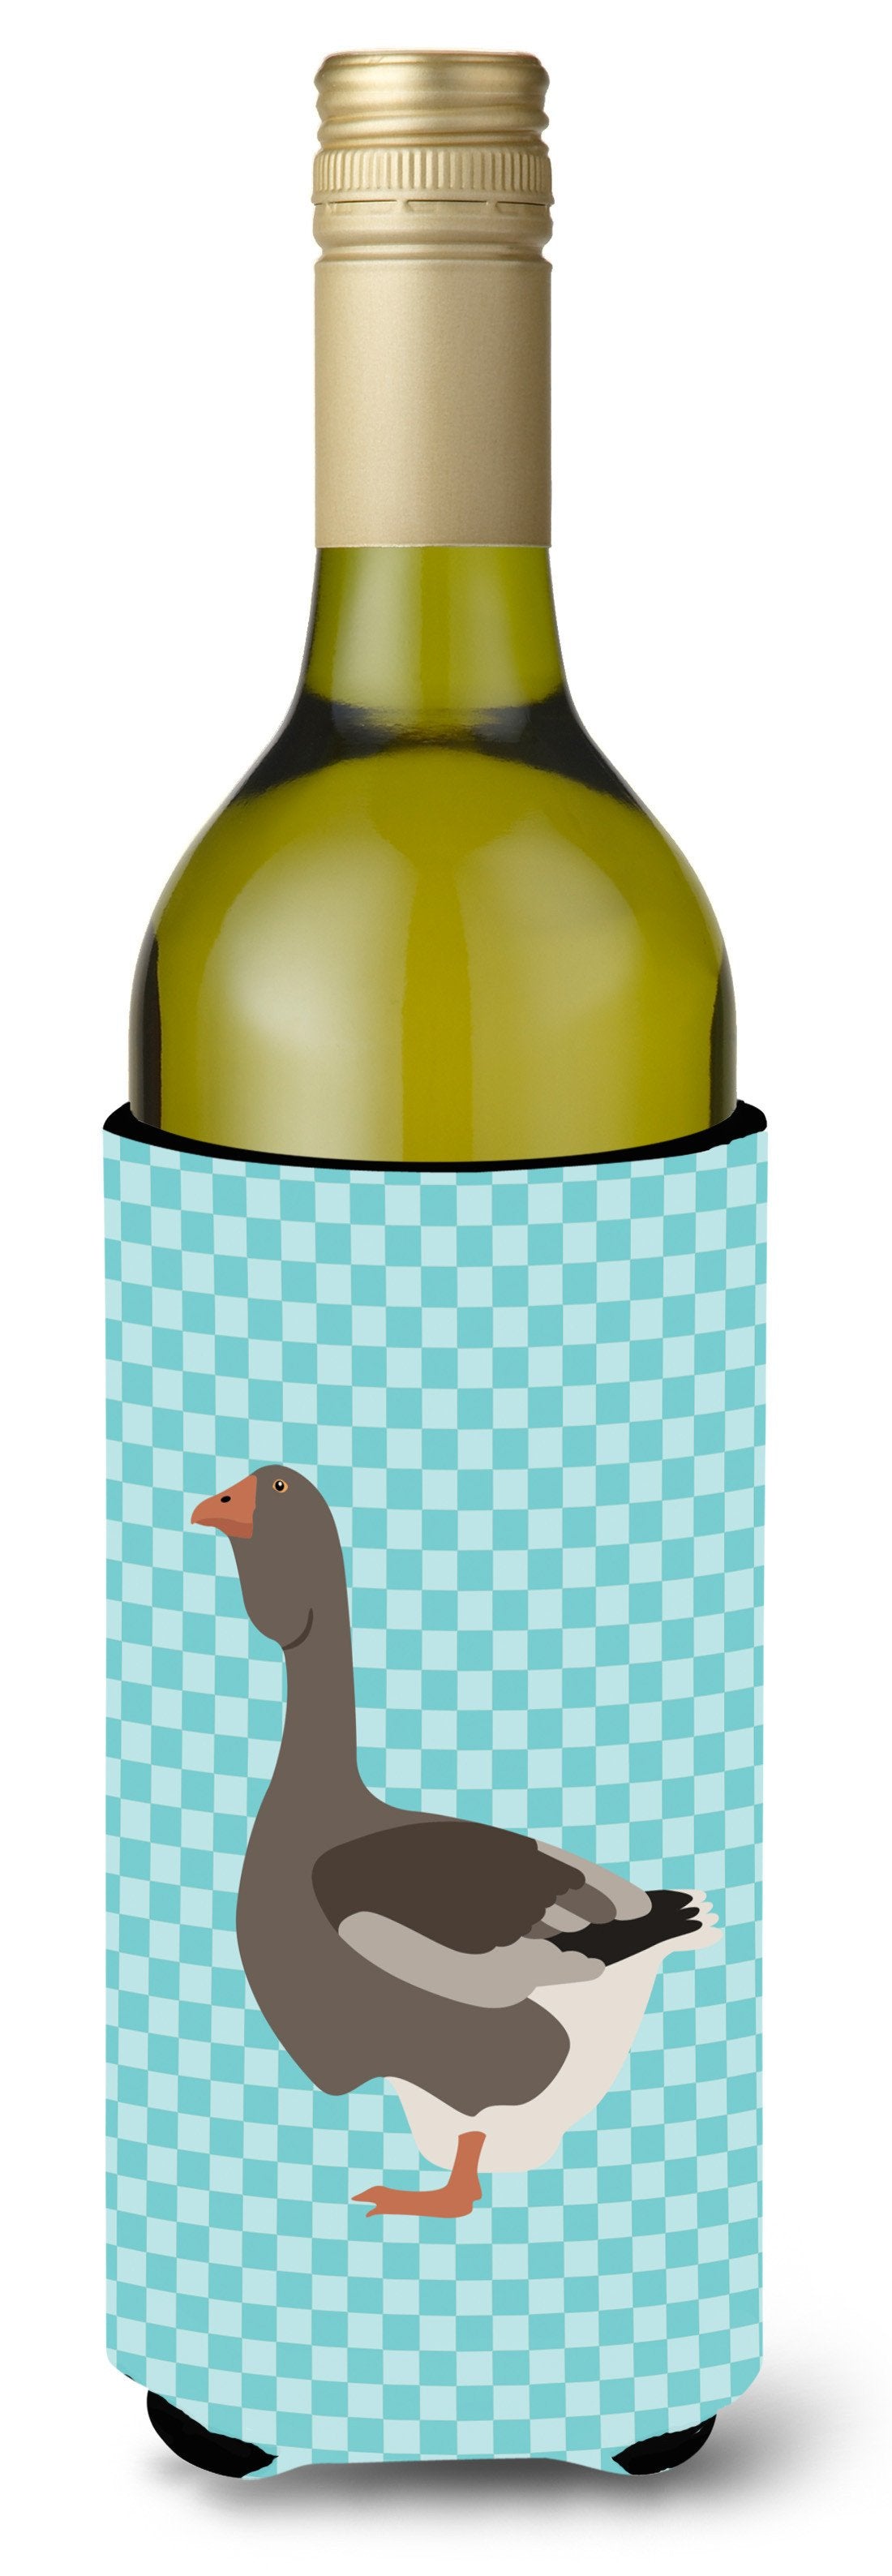 Toulouse Goose Blue Check Wine Bottle Beverge Insulator Hugger BB8071LITERK by Caroline's Treasures